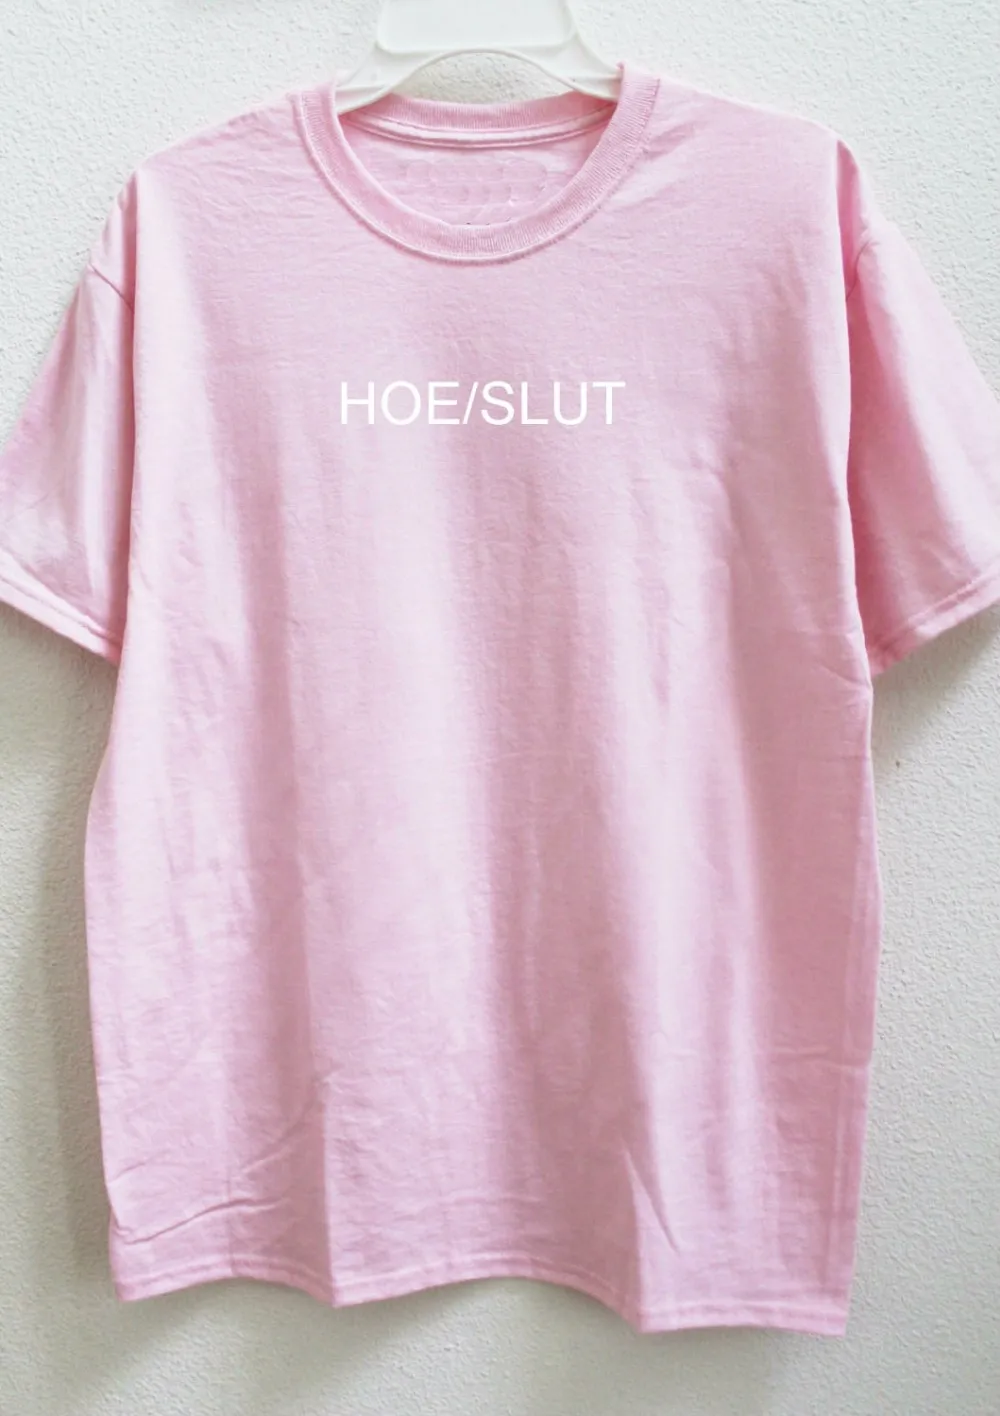 Женская футболка с надписью Hoe slut, хлопковая Повседневная забавная футболка для леди, хипстер, Tumblr, Прямая поставка, Z-821